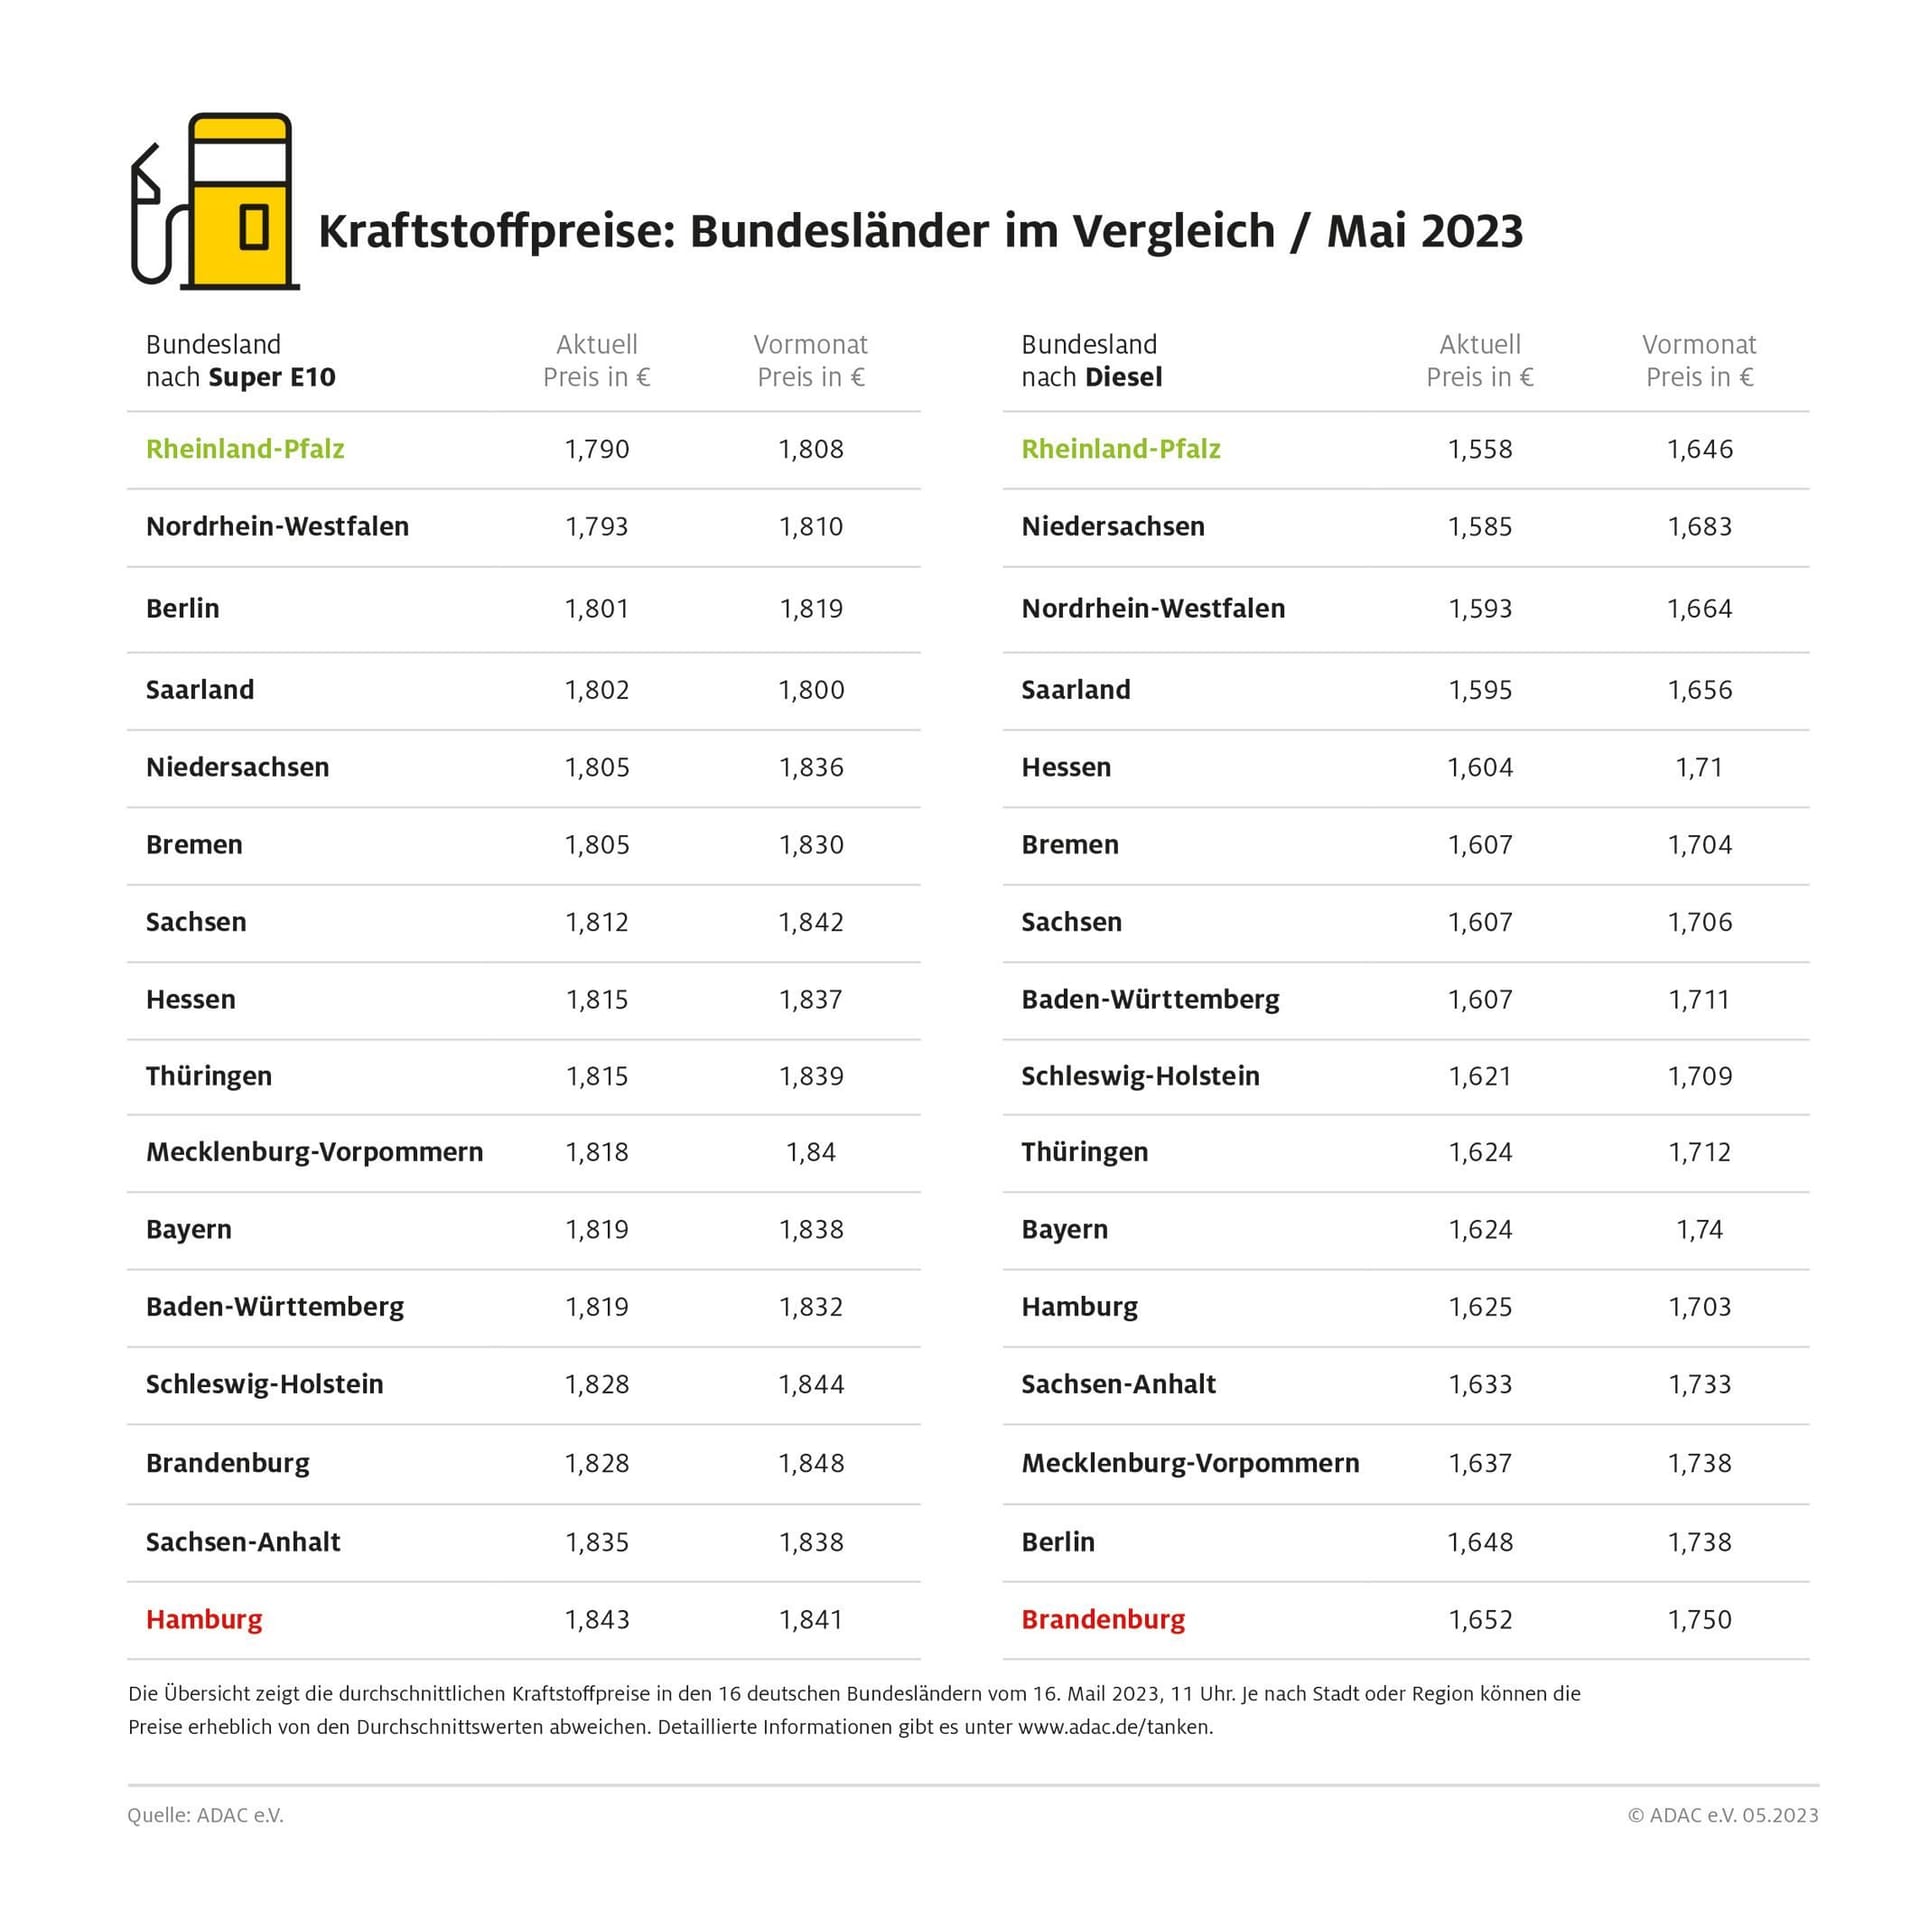 Kraftstoffpreise in den 16 deutschen Bundesländer am 16. Mai 2023, 11 Uhr.